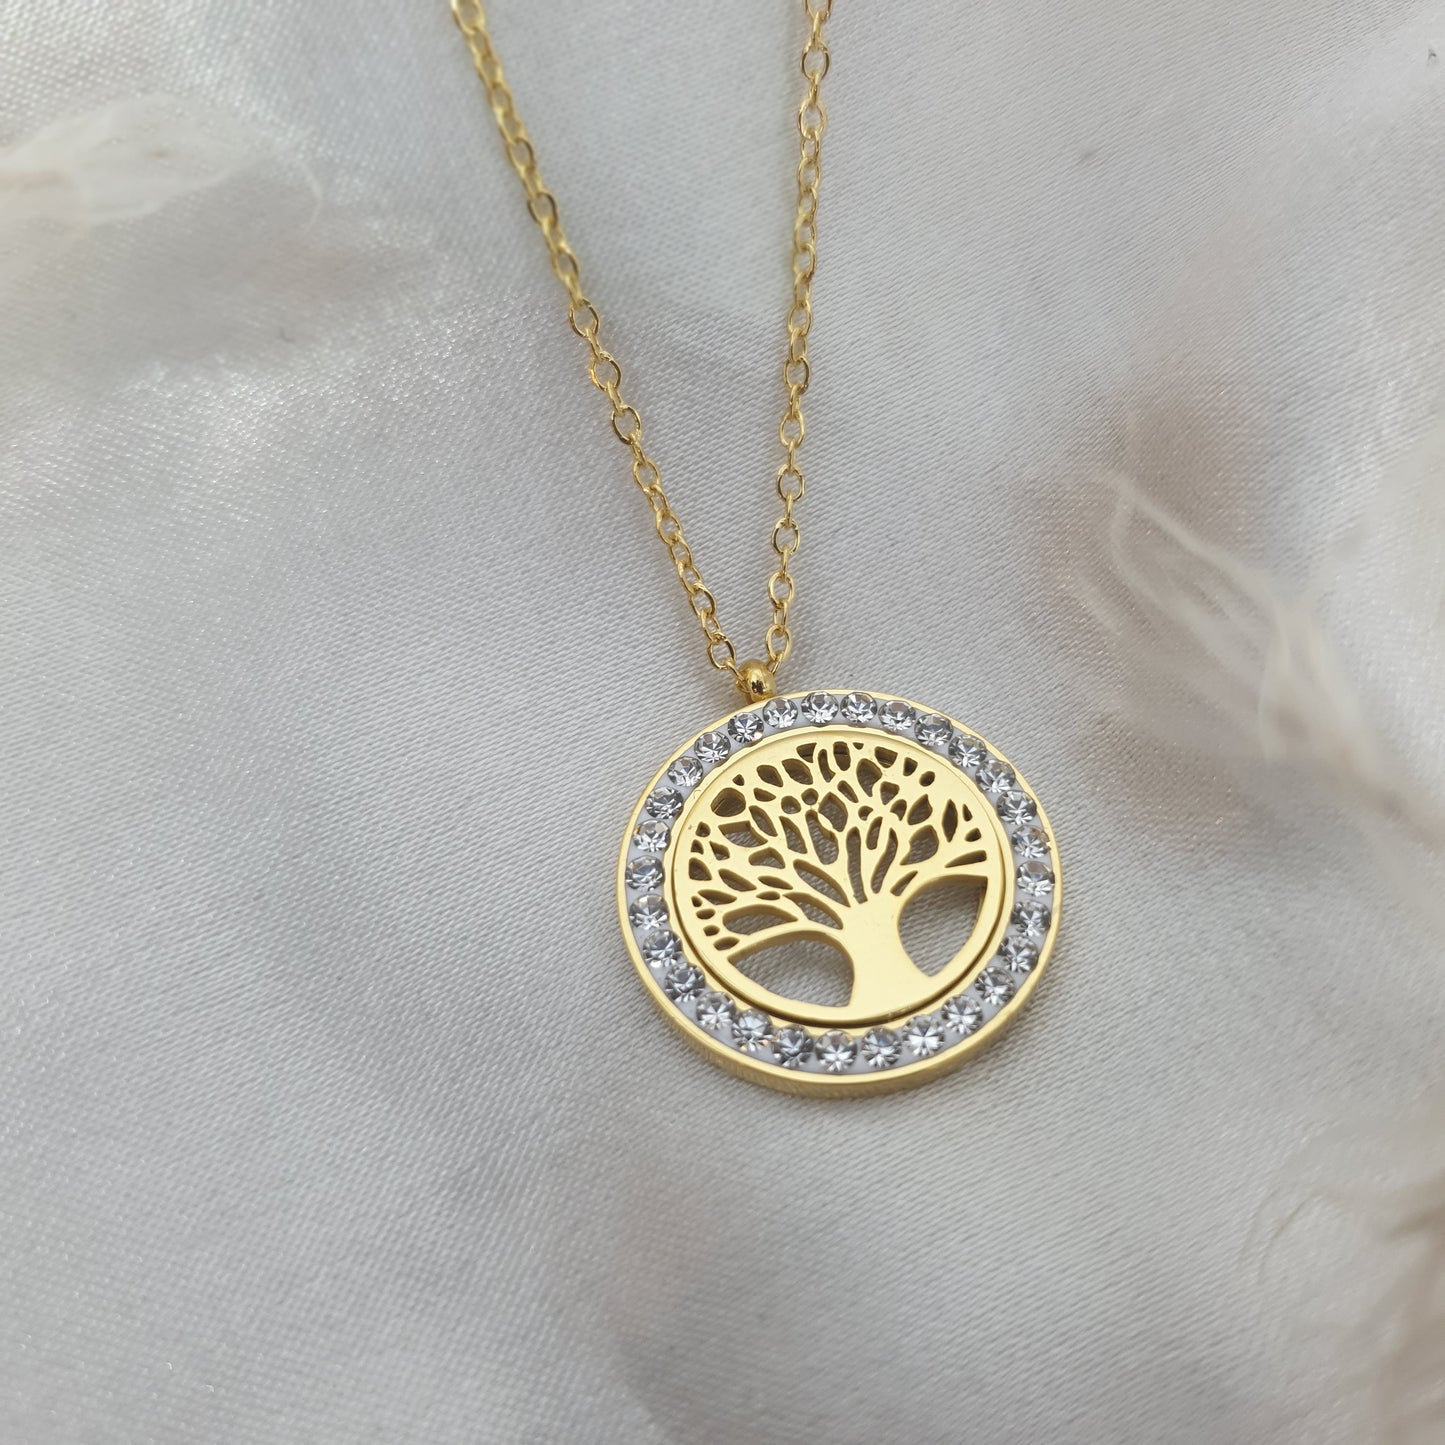 Collier, médaillon doré en strass argenté, arbre de vie en acier inoxydable TREE LIFE RéussiteActif